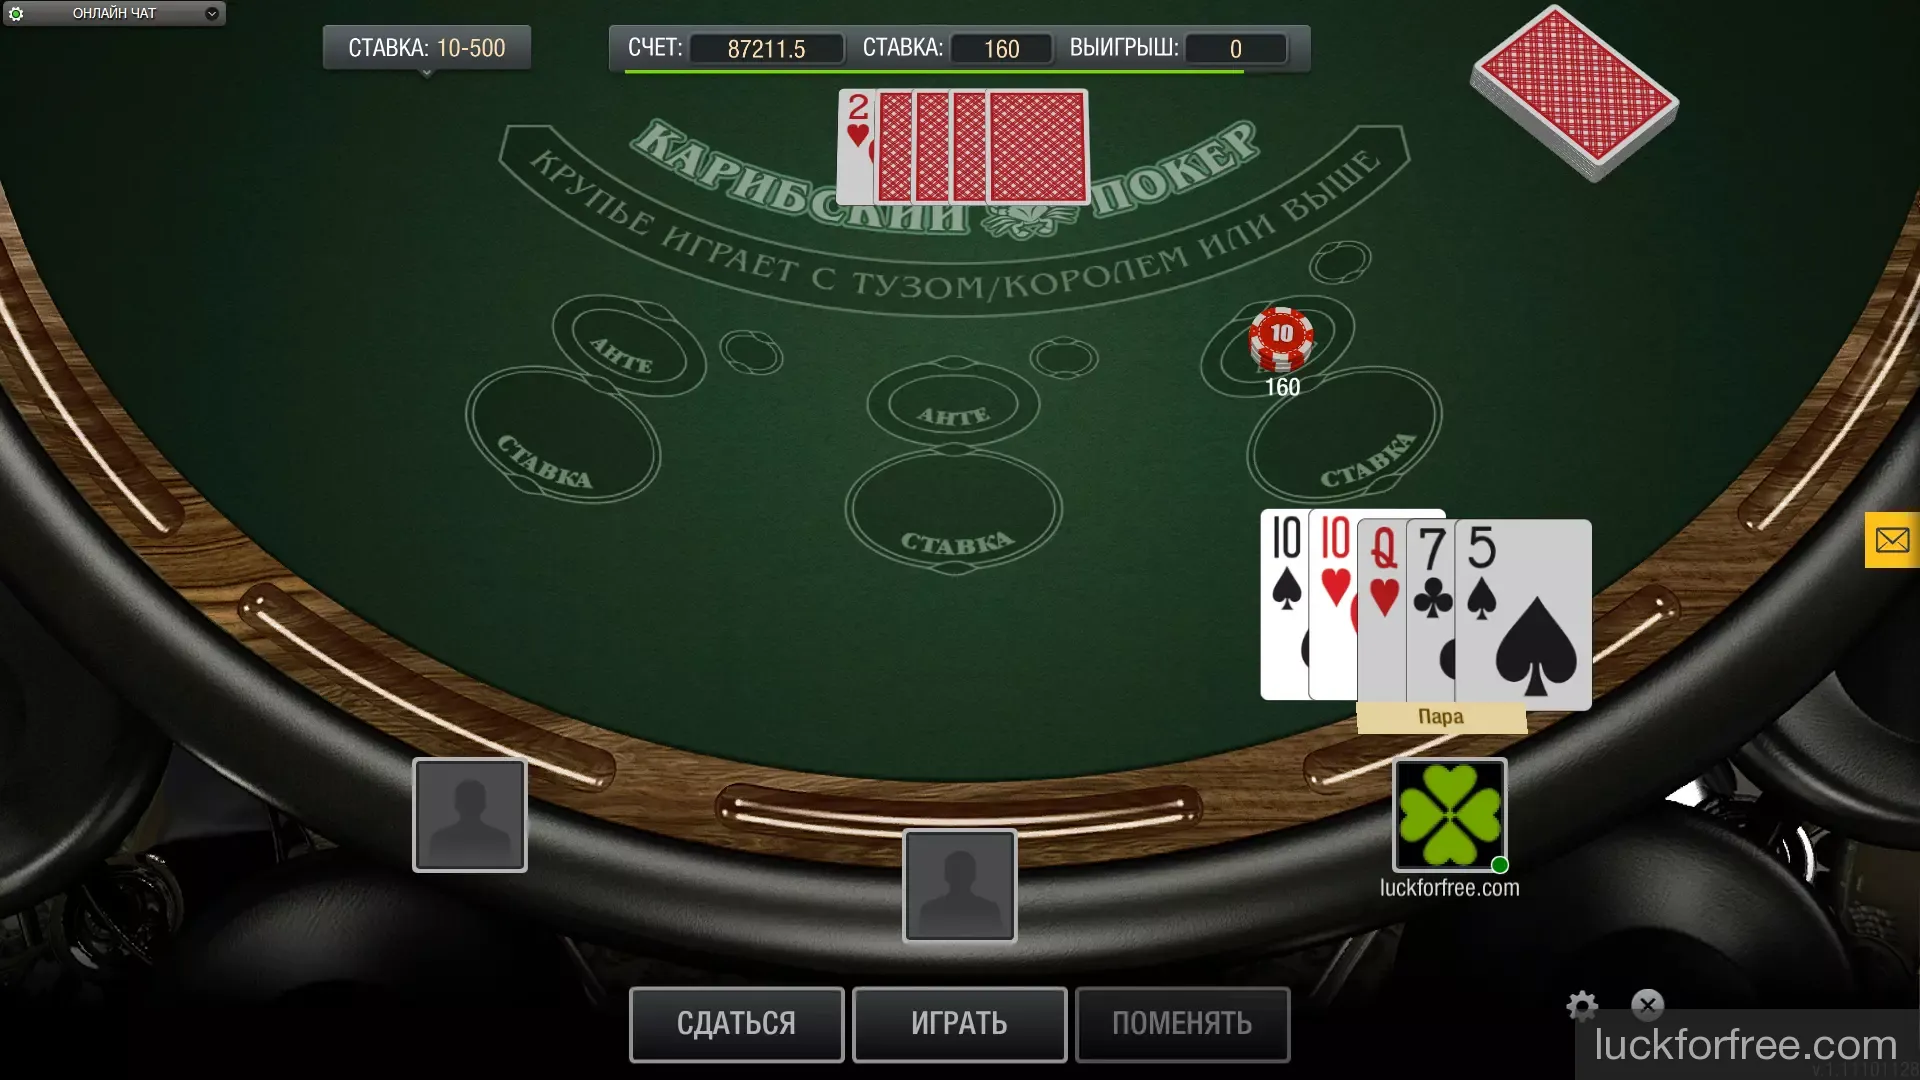 Покер играть онлайн с регистрацией играть в автоматы онлайн карты